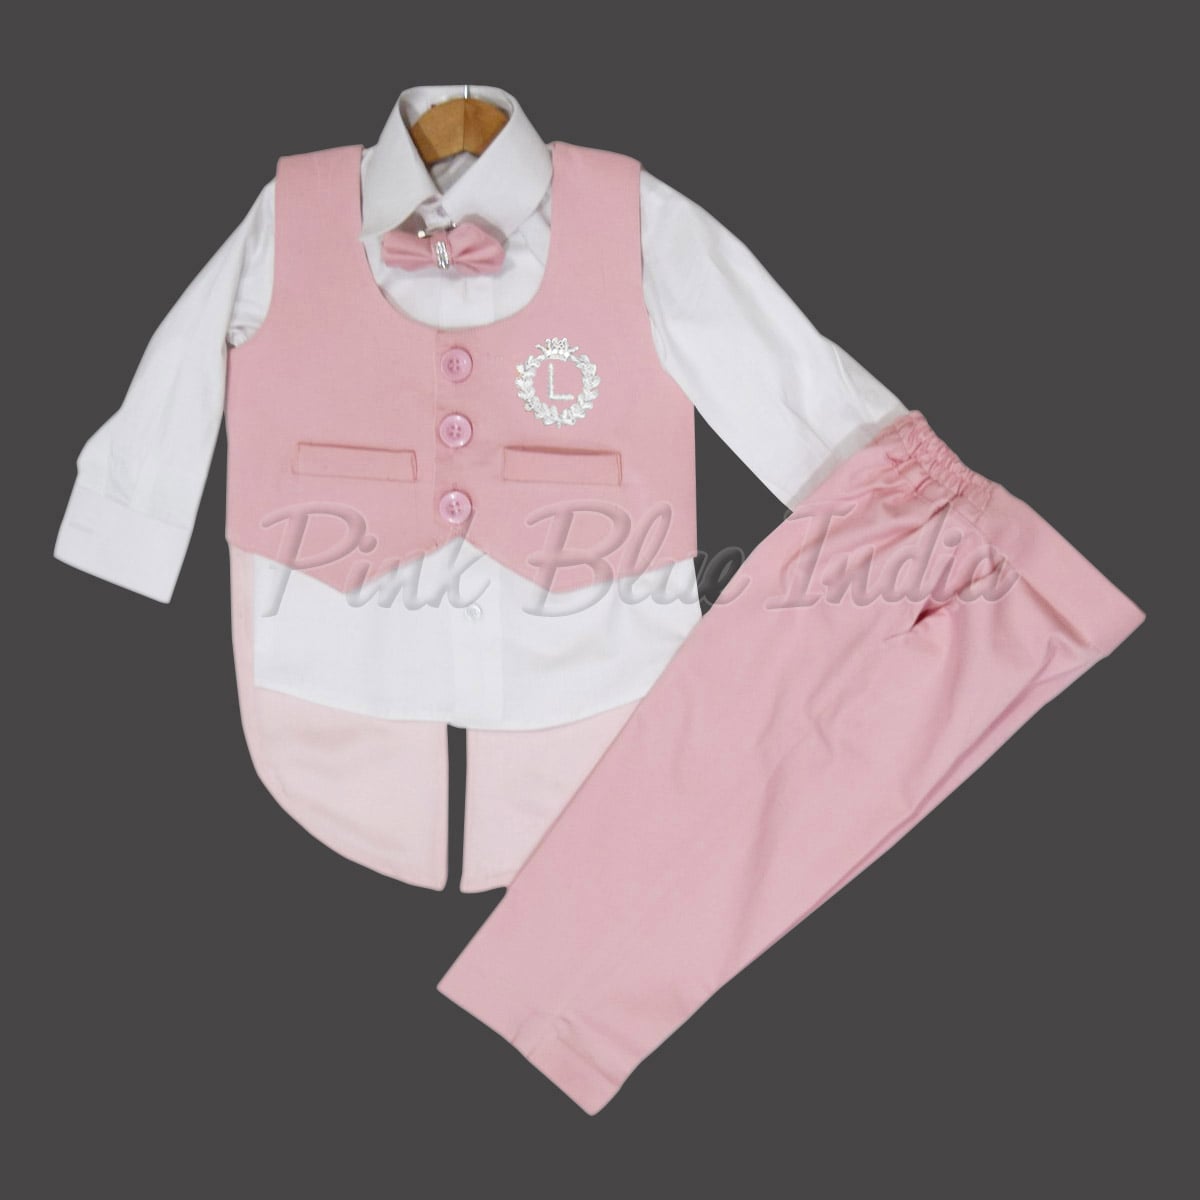 Buy ZOEREA Baby Boys Tuxedo Gentleman Romper Jumpsuit Wedding Outfit 3-18 M  Online at desertcartINDIA